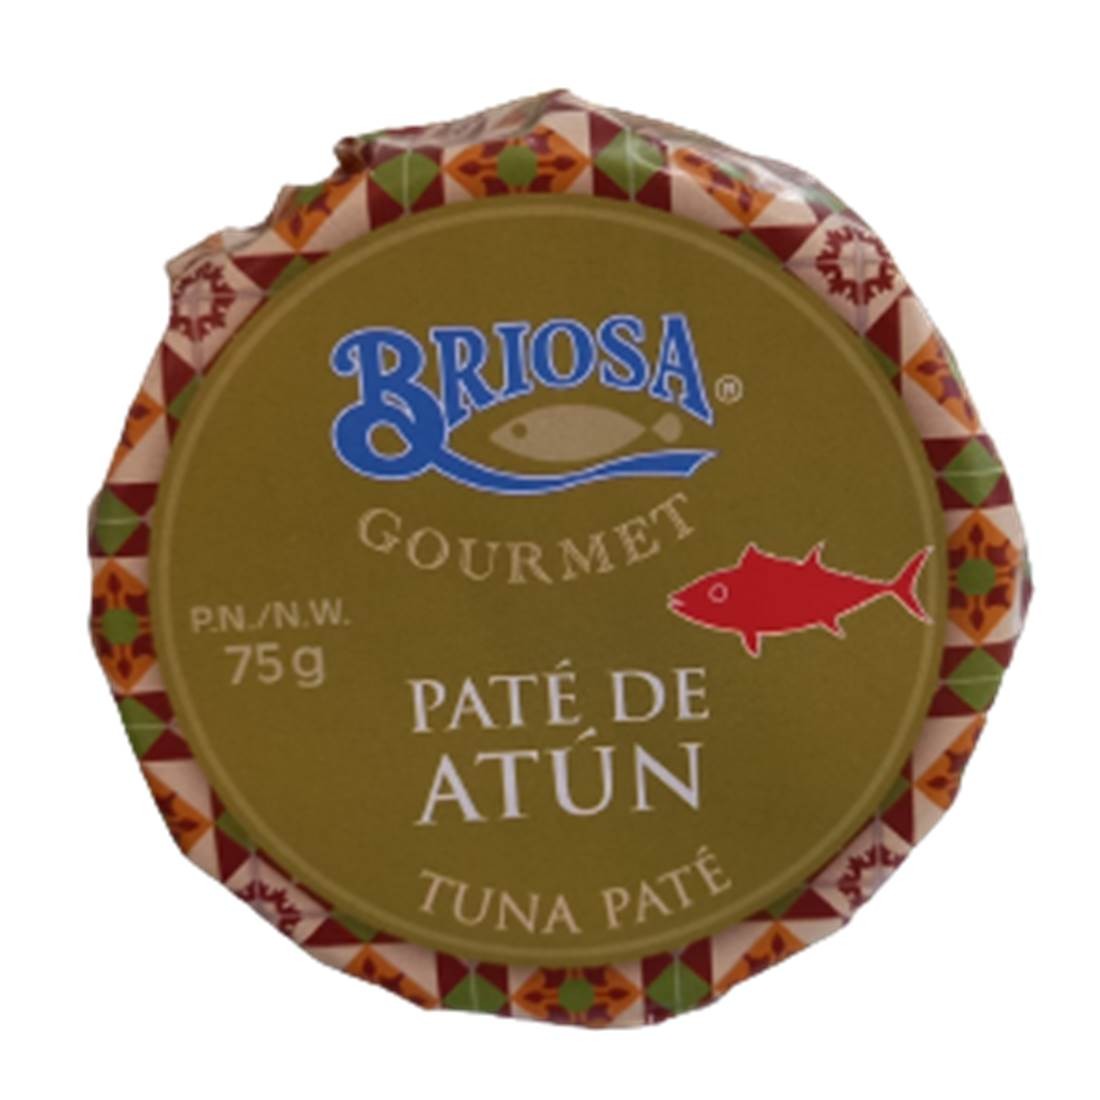 Paté de atún, 75 g.